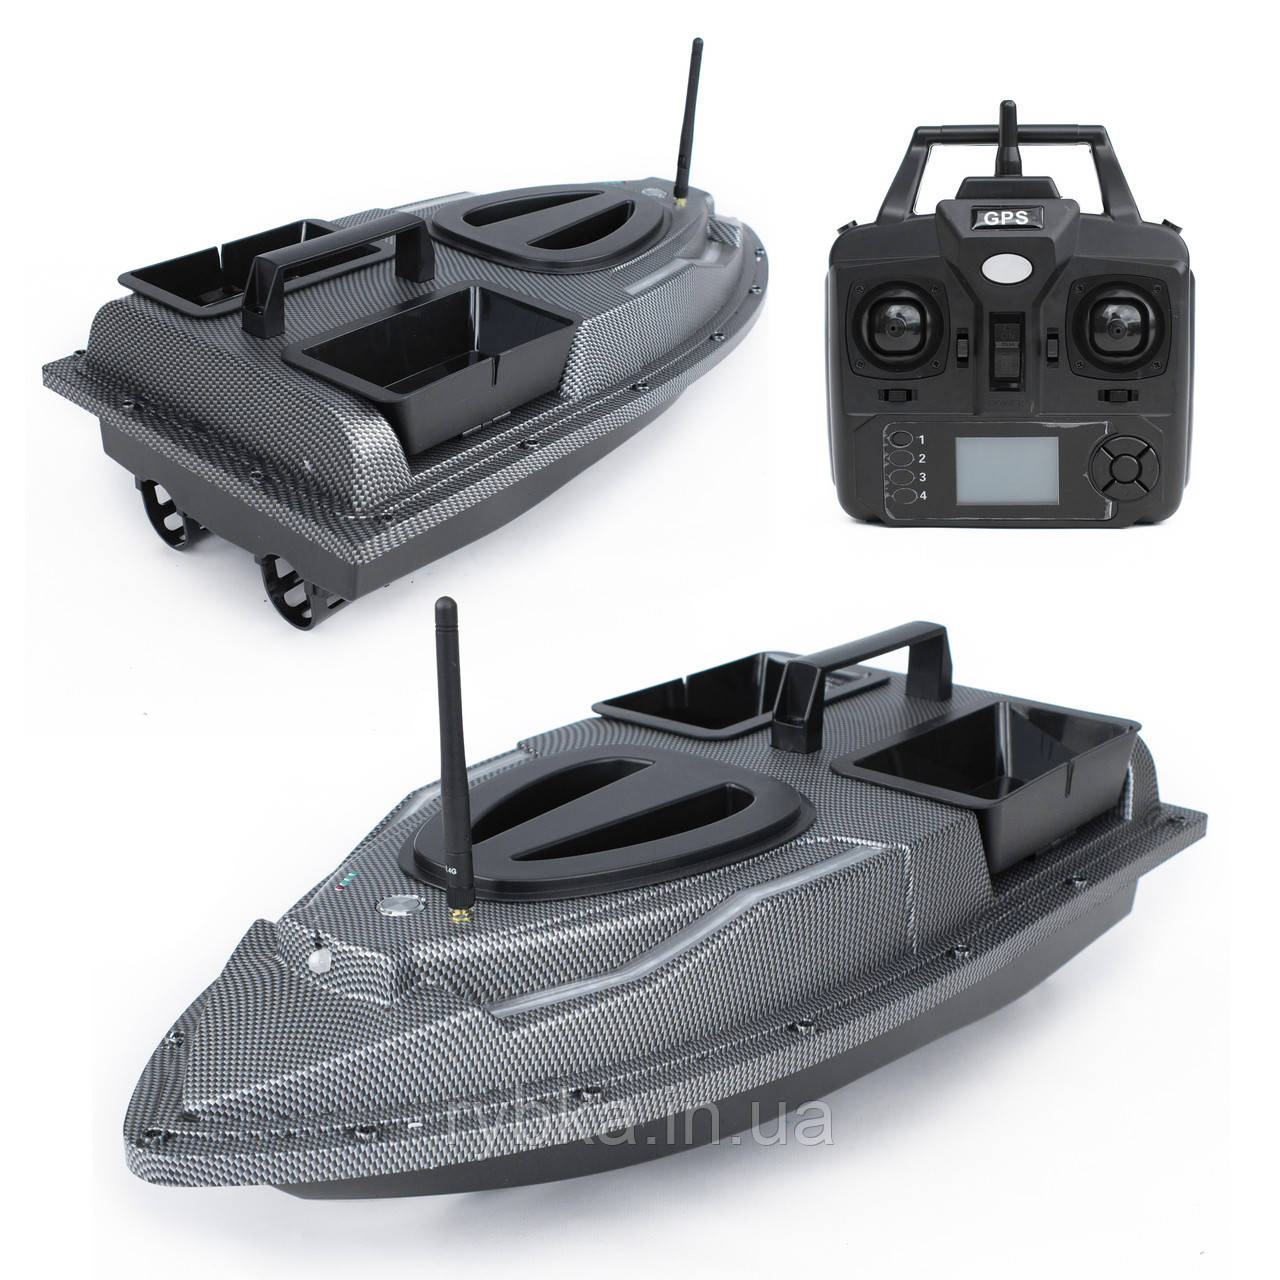 Кораблик для рибалки Flytec V900 GPS для завезення підгодовування